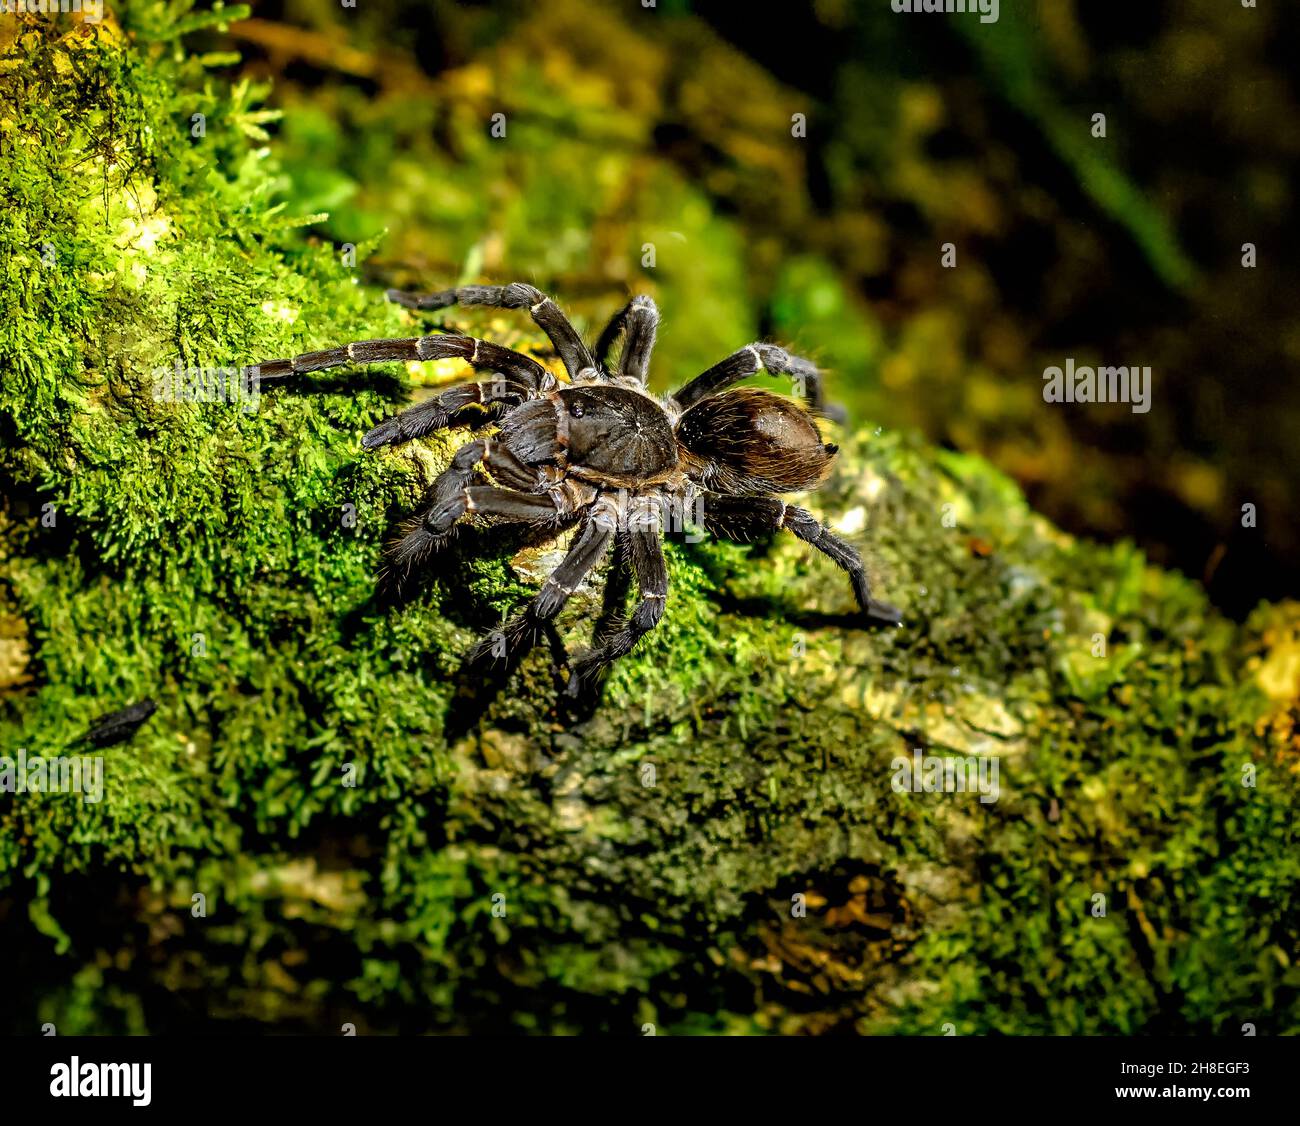 Las tarántulas amazónicas son las arañas más grandes del mundo, esta fotografiada durante un paseo nocturno por la selva amazónica Foto de stock